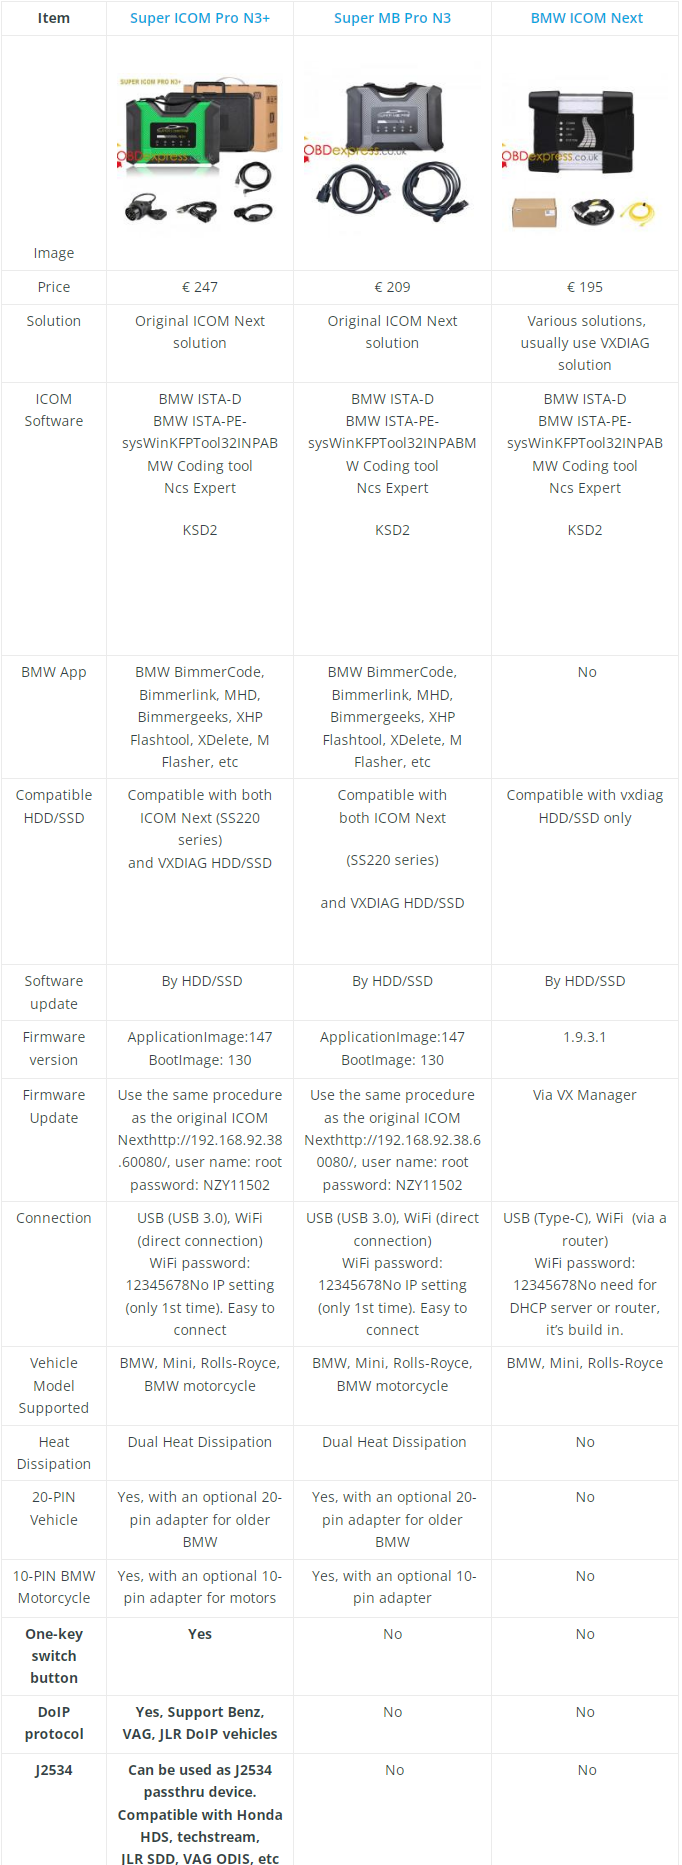 Super ICOM Pro N3+ 対 Super MB Pro N3 対 BMW ICOM Next